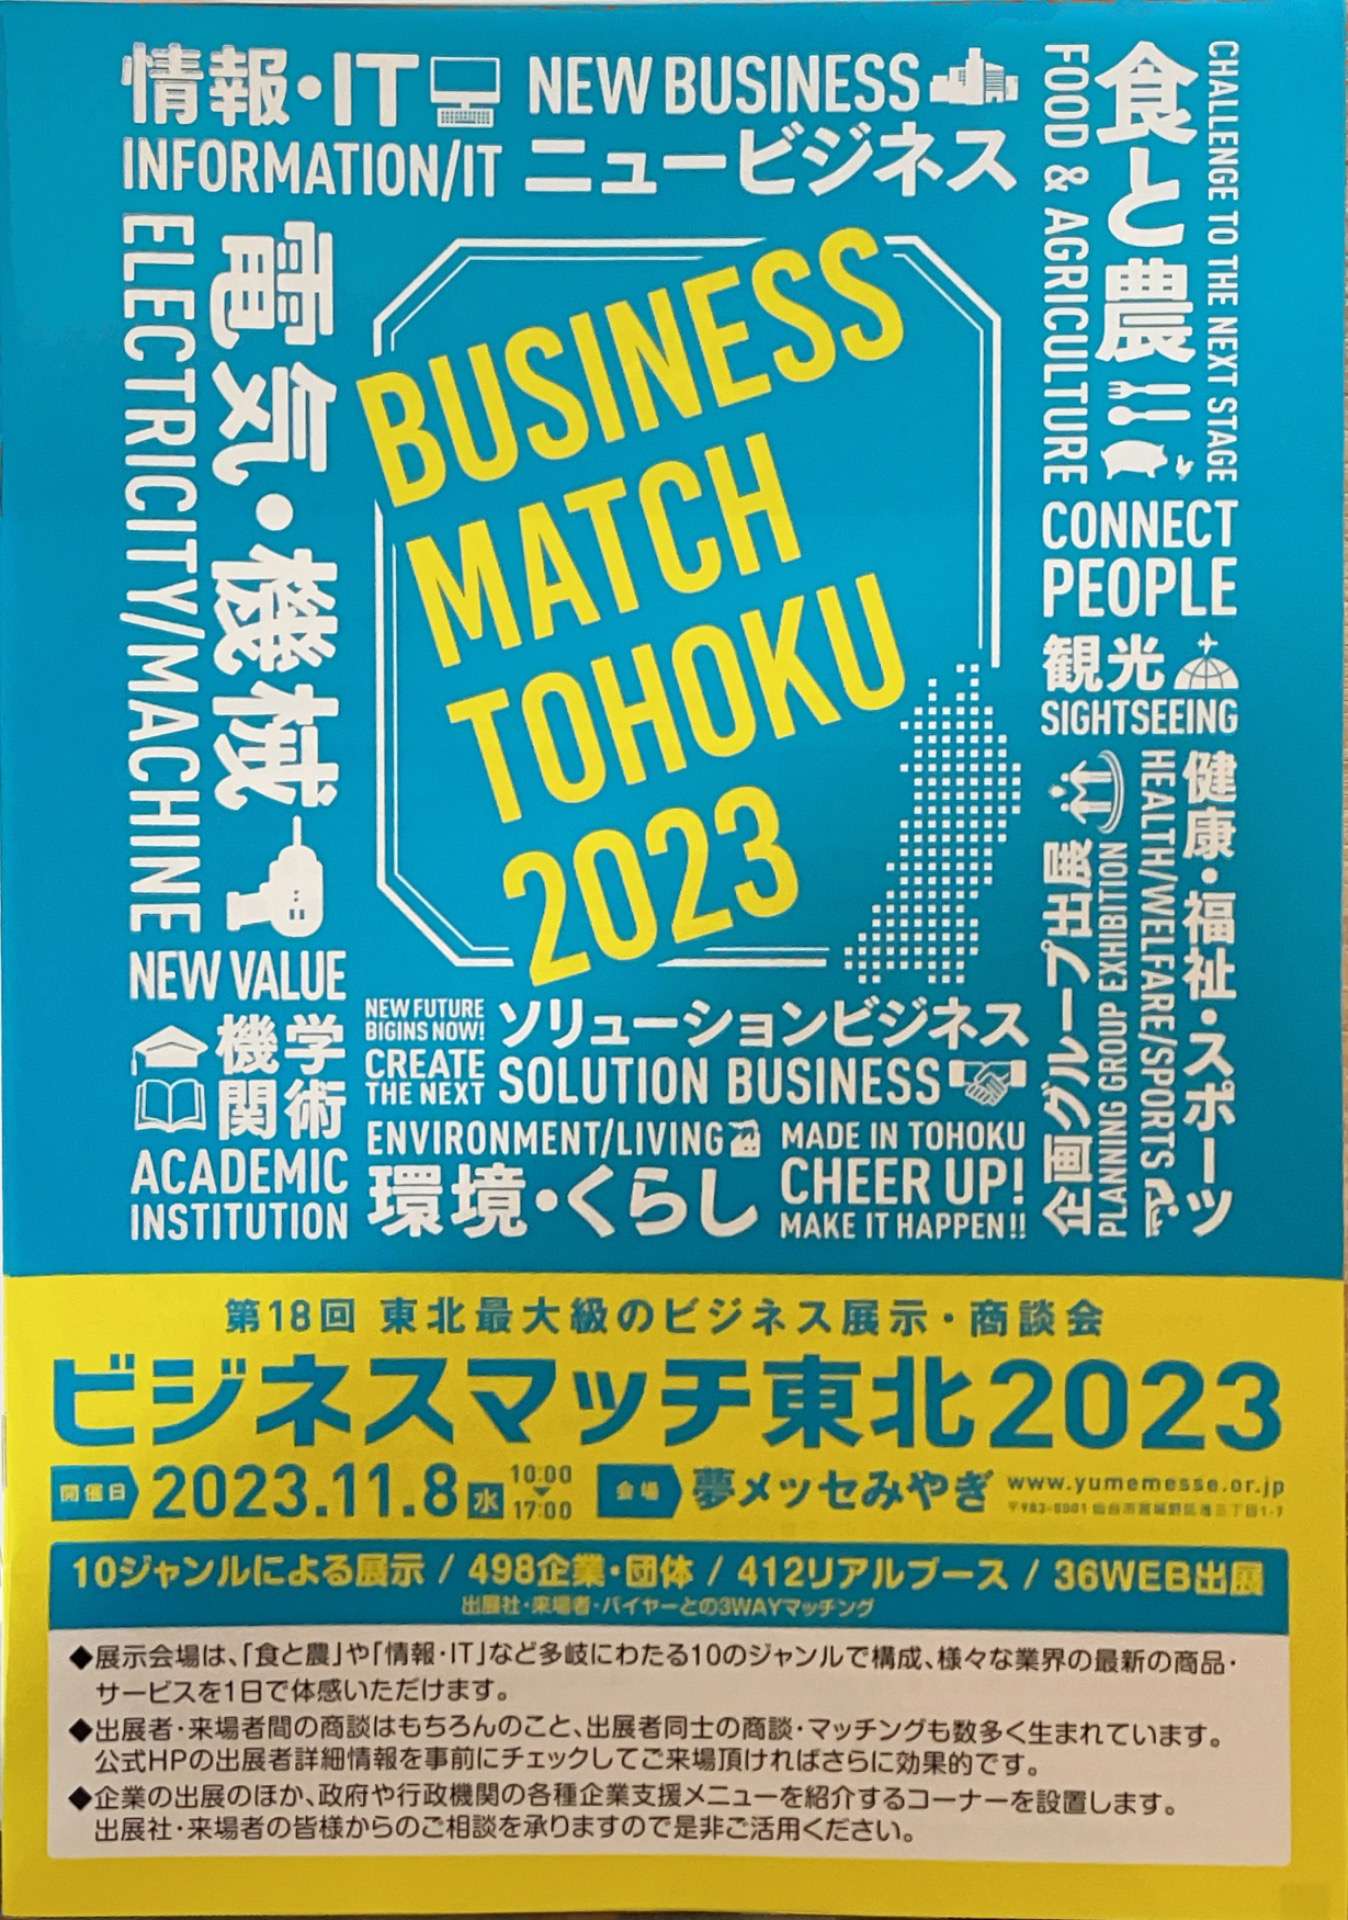 仙台出張「ビジネスマッチ東北2023」